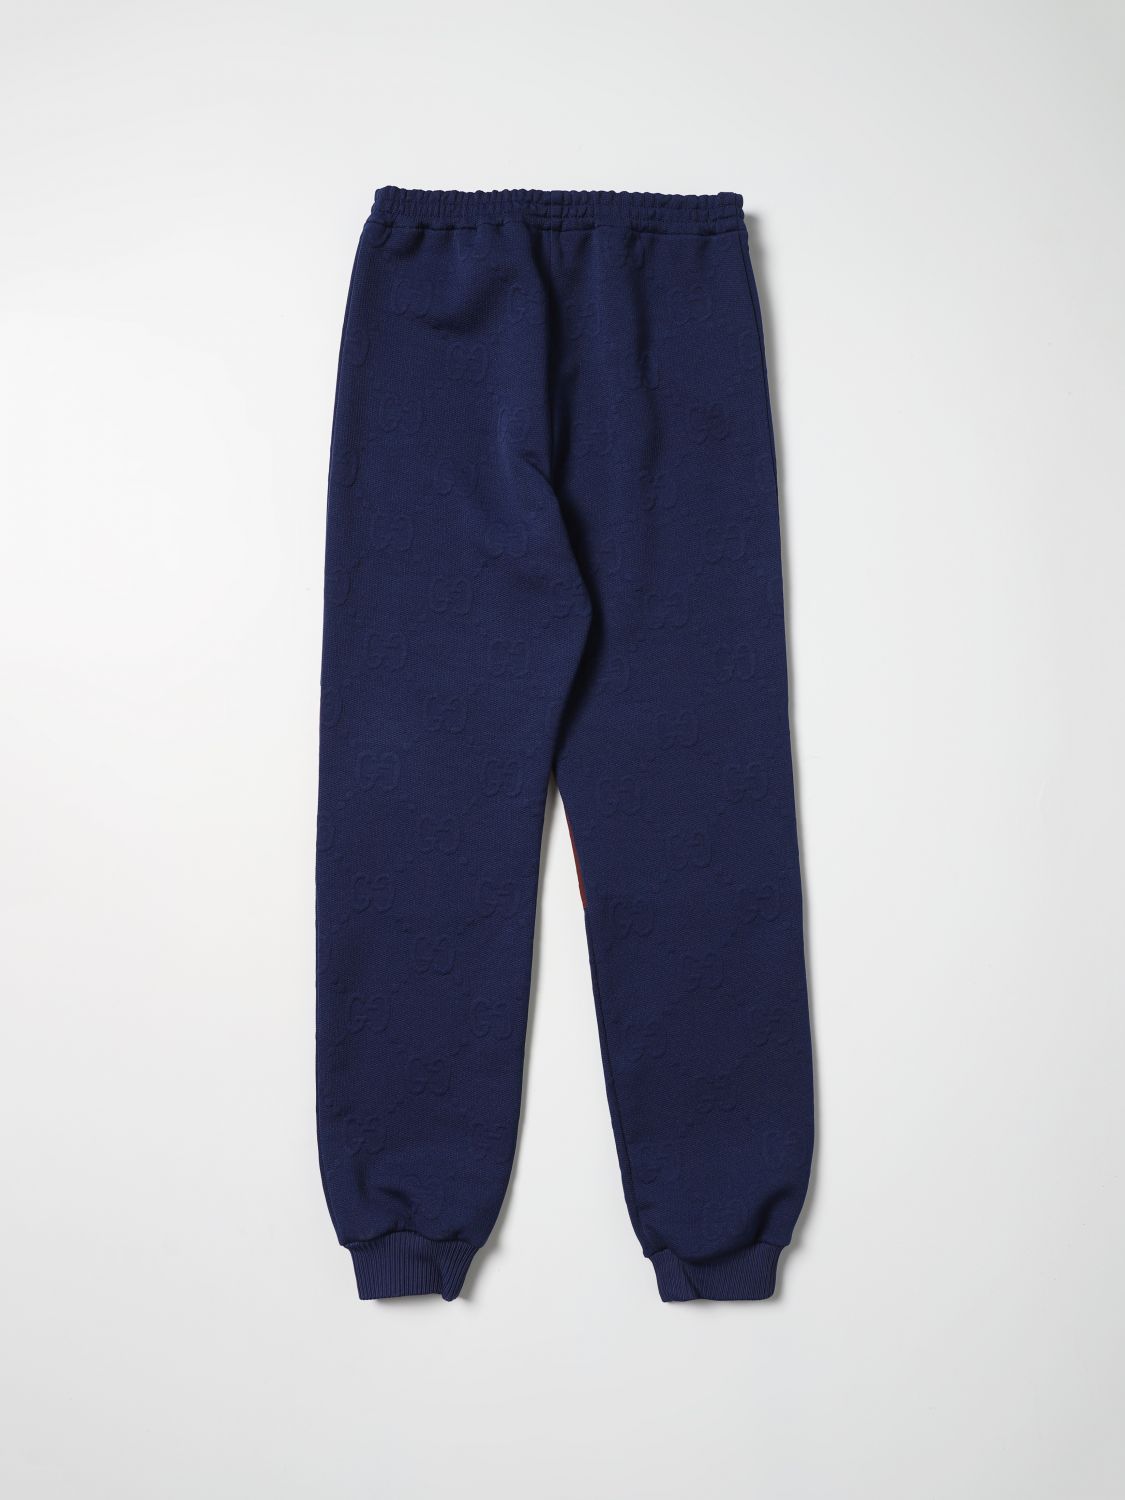 Pantalón Gucci: Pantalón Gucci para niño azul oscuro 2